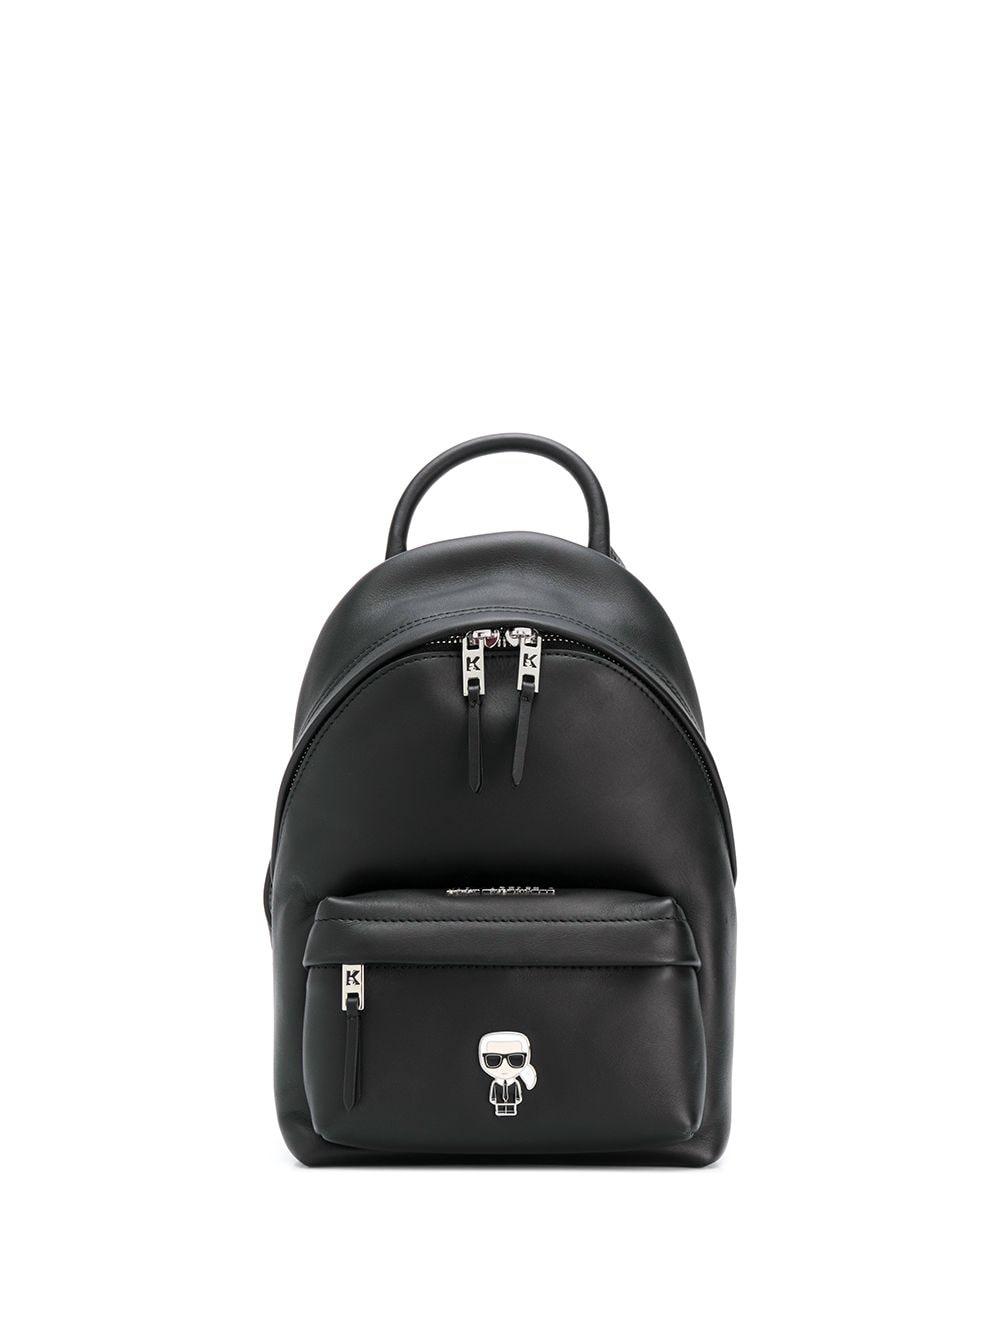 Karl Lagerfeld Leather K/ikonik Metal Logo Backpack in Black - Lyst